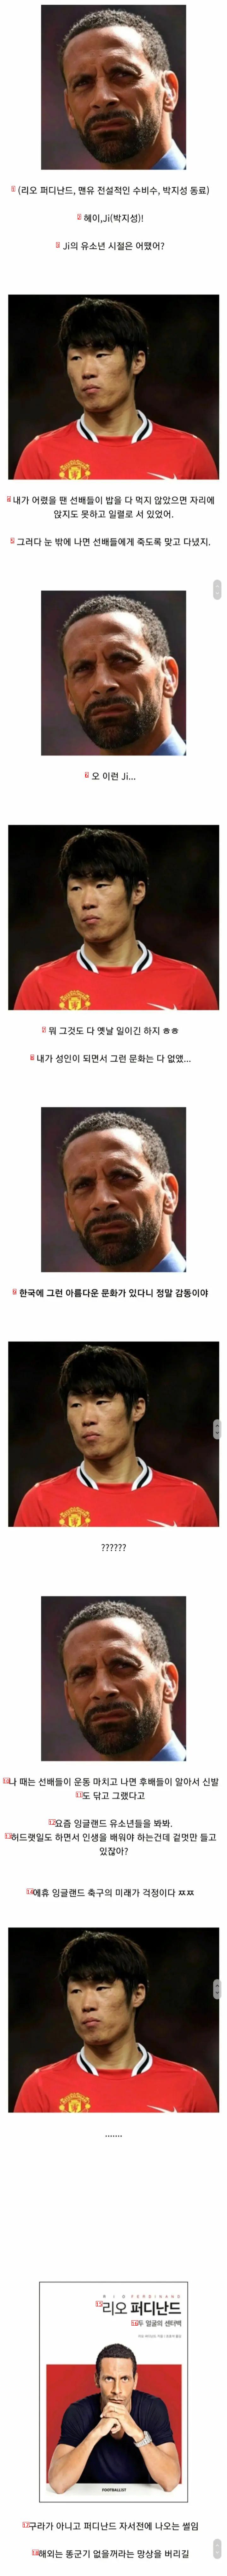 韓国の糞軍記を聞いた海外選手jpg